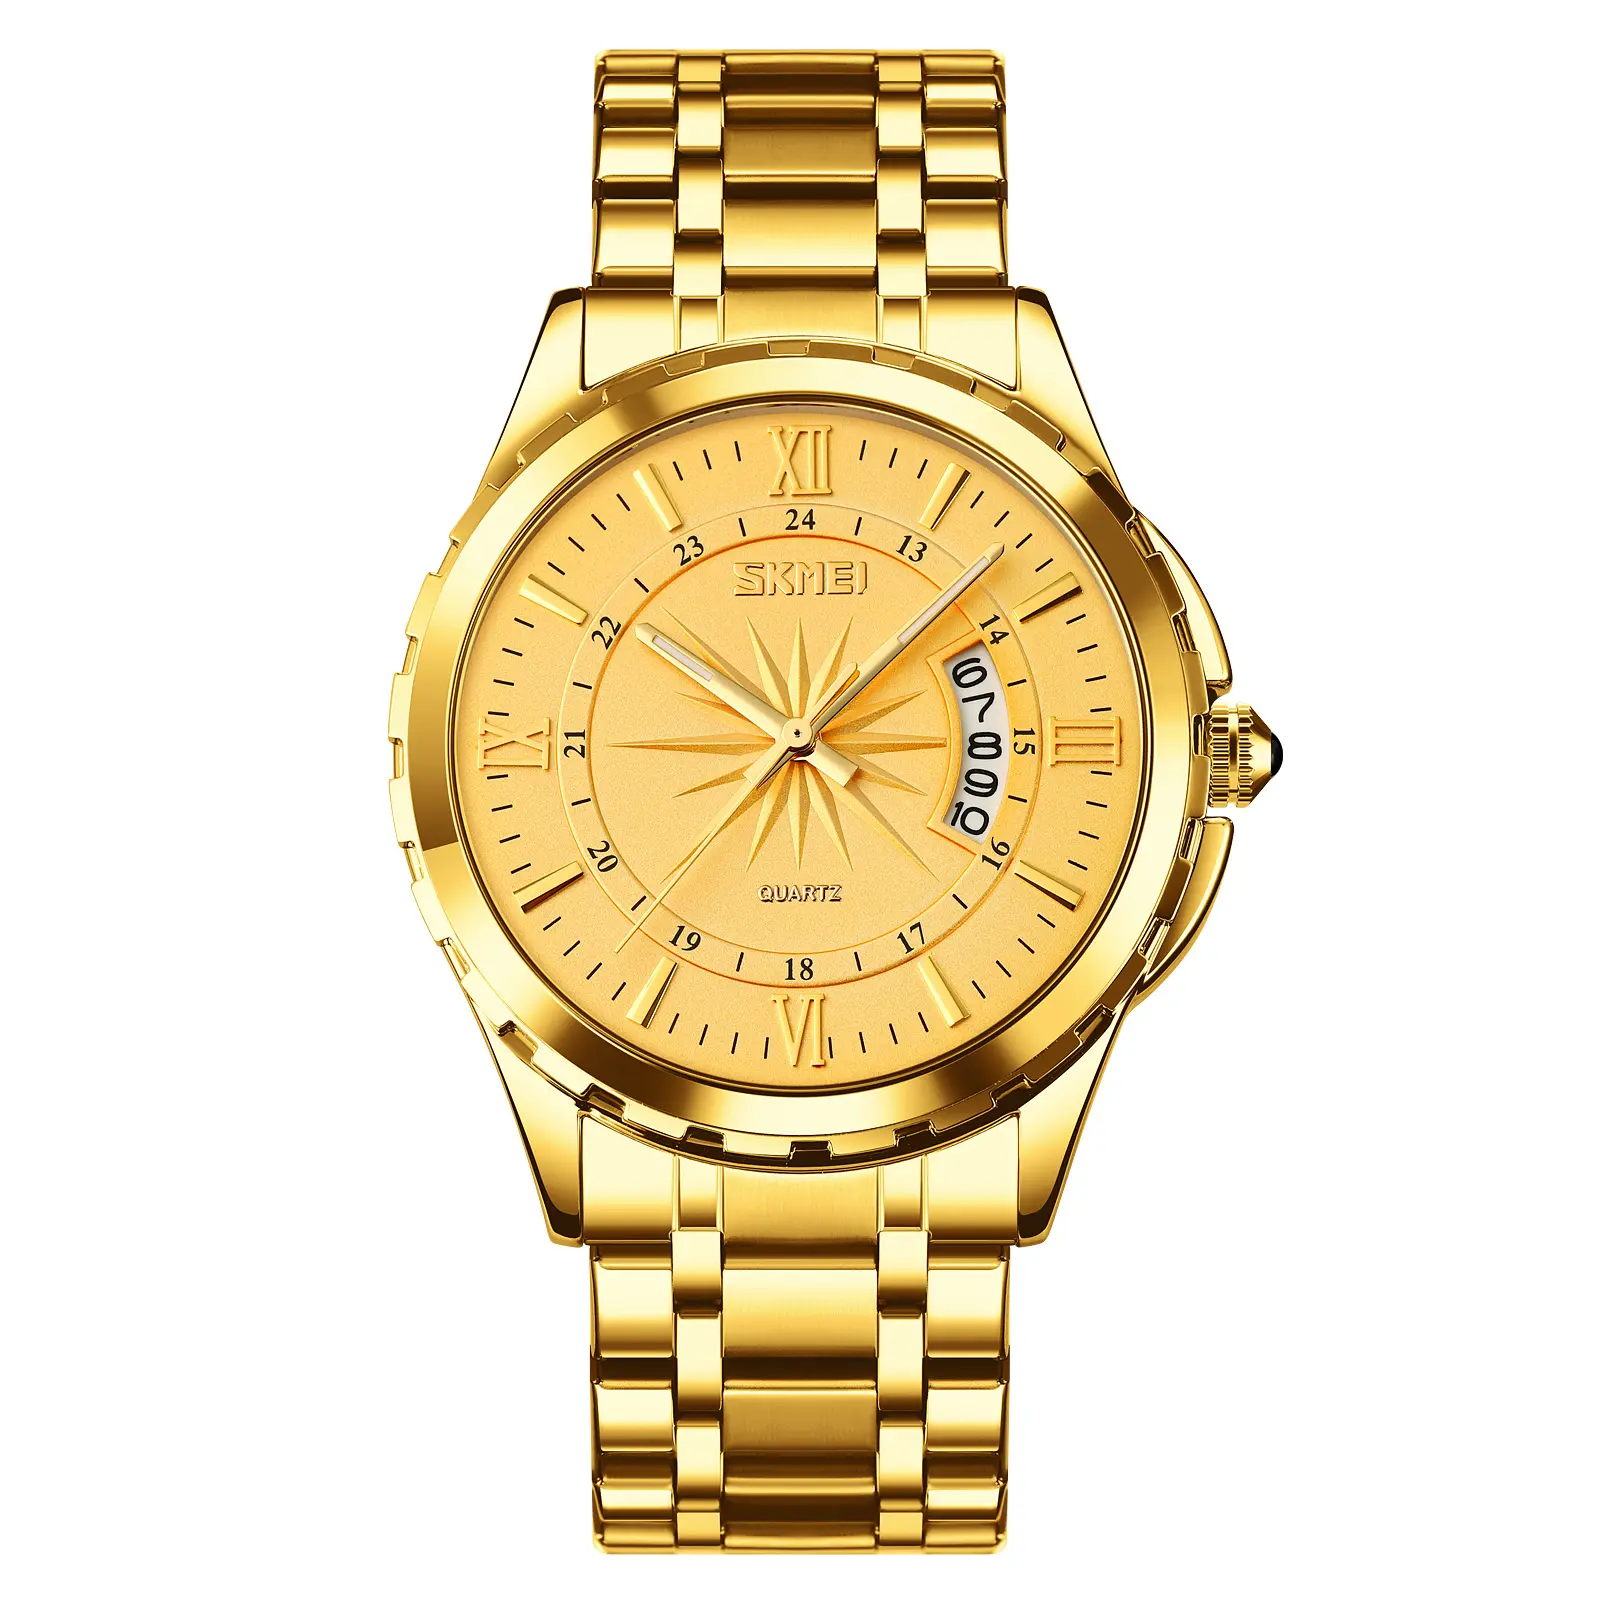 relgios skmei original 9069 reloj skmei para hombre 30M water proof watch luxury stainless steel quartz watch